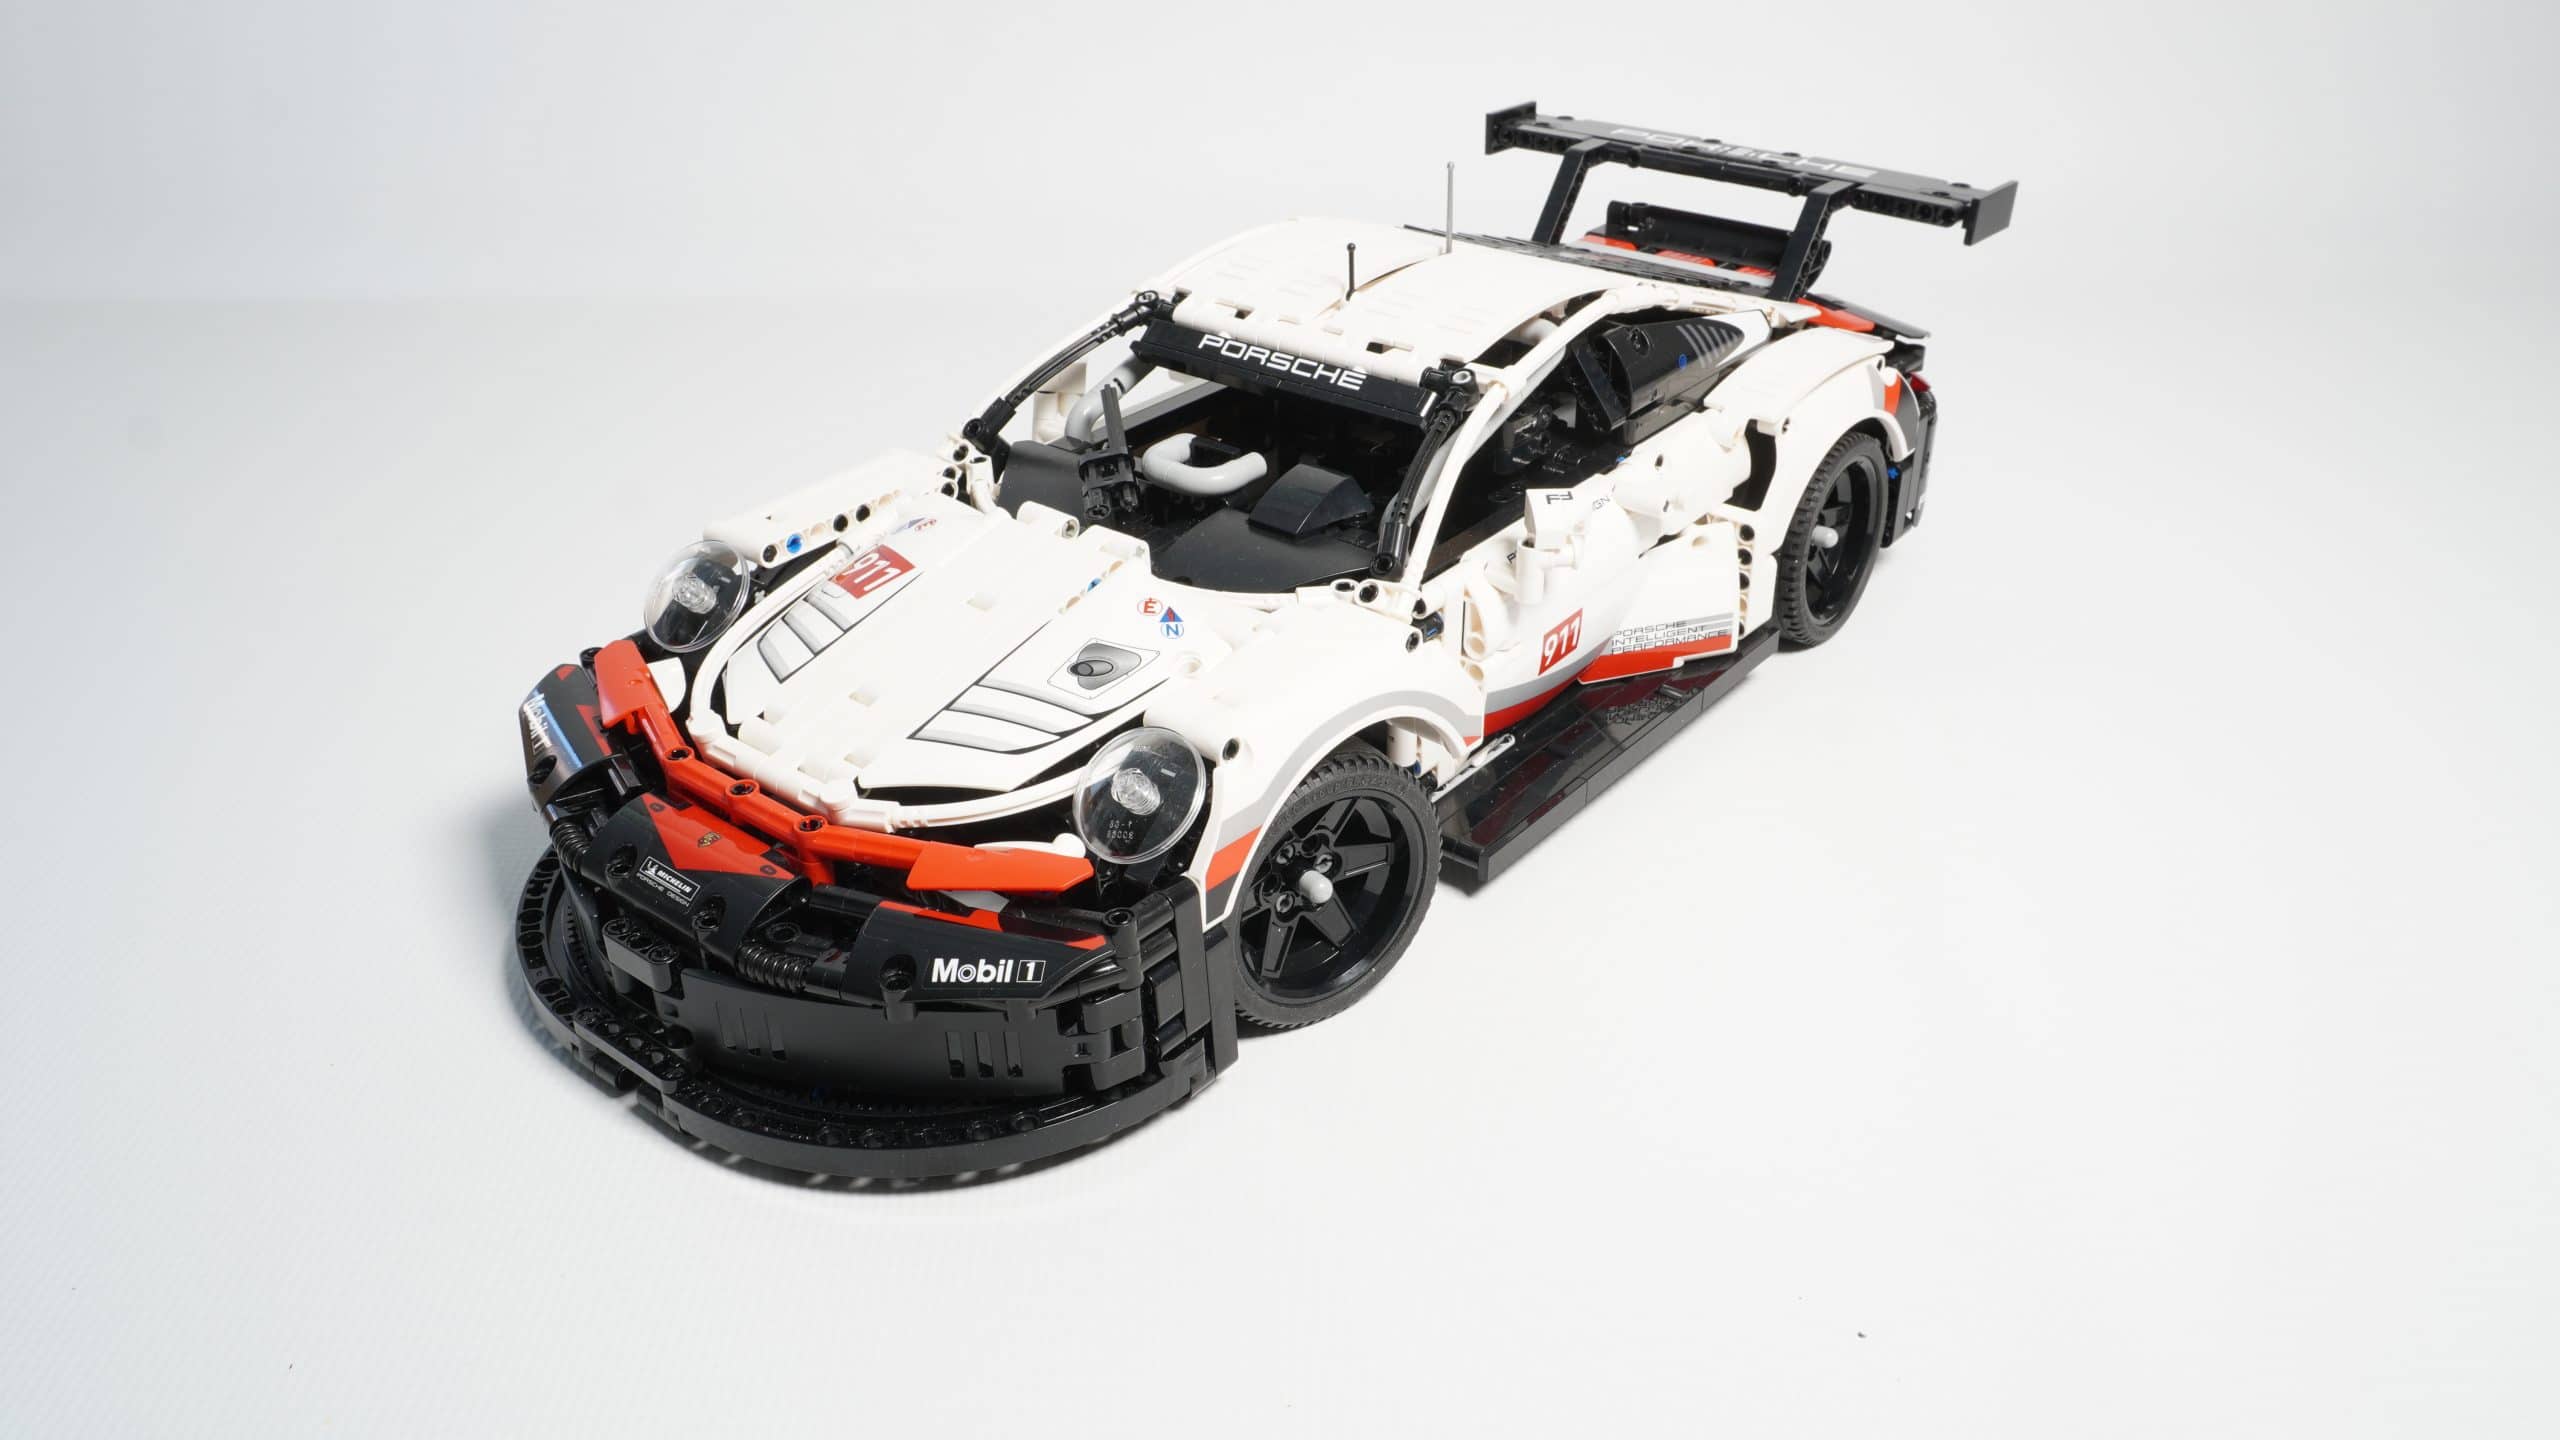 Tieferlegung Kit passend für Lego Porsche 911 RSR 42096 